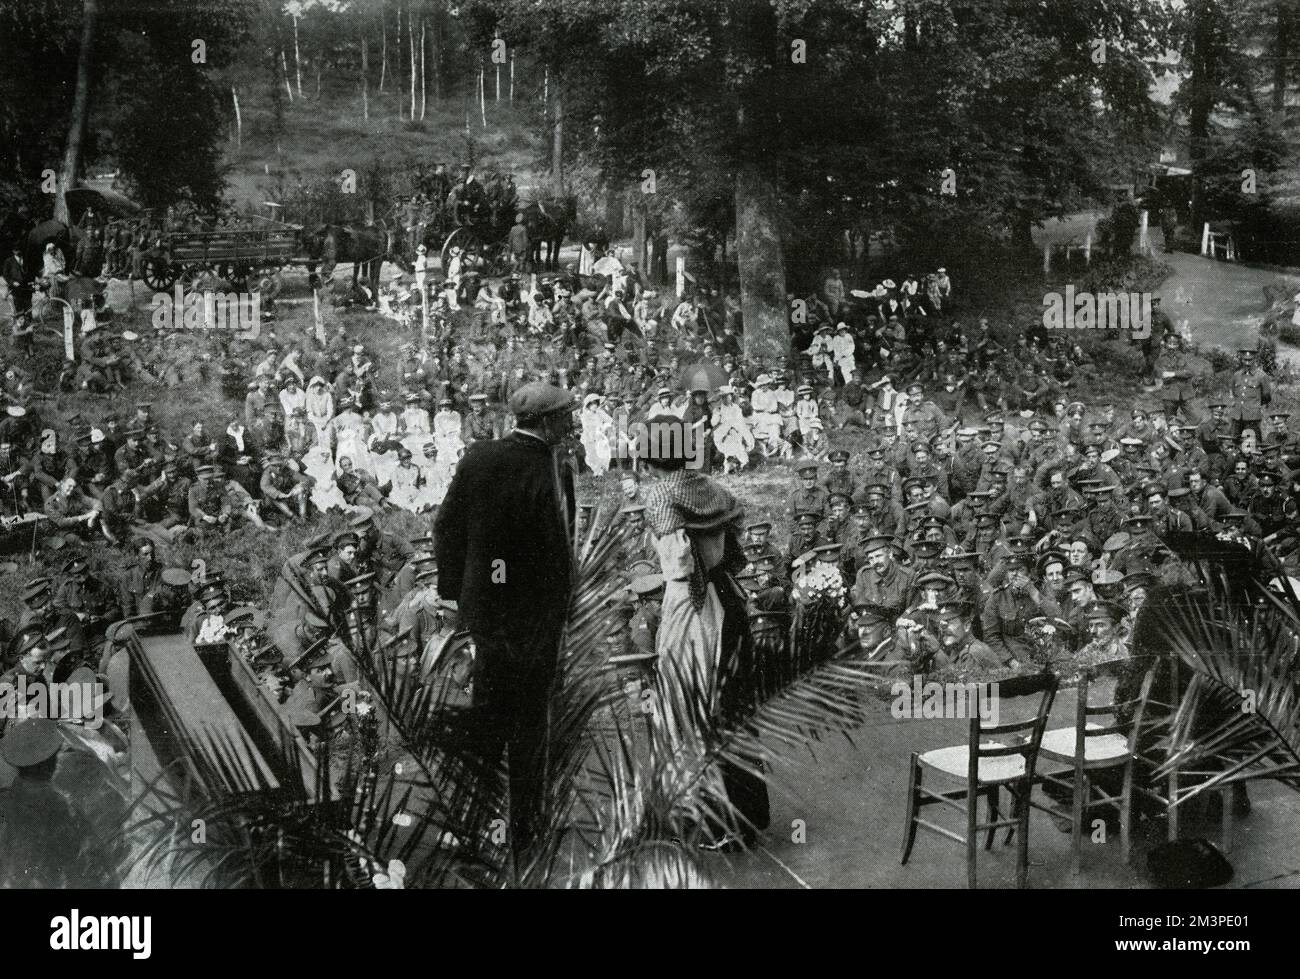 WW1 Uhr - Unterhaltung der Truppen - Open-Air-Konzert, Frankreich Datum: 1915 Stockfoto